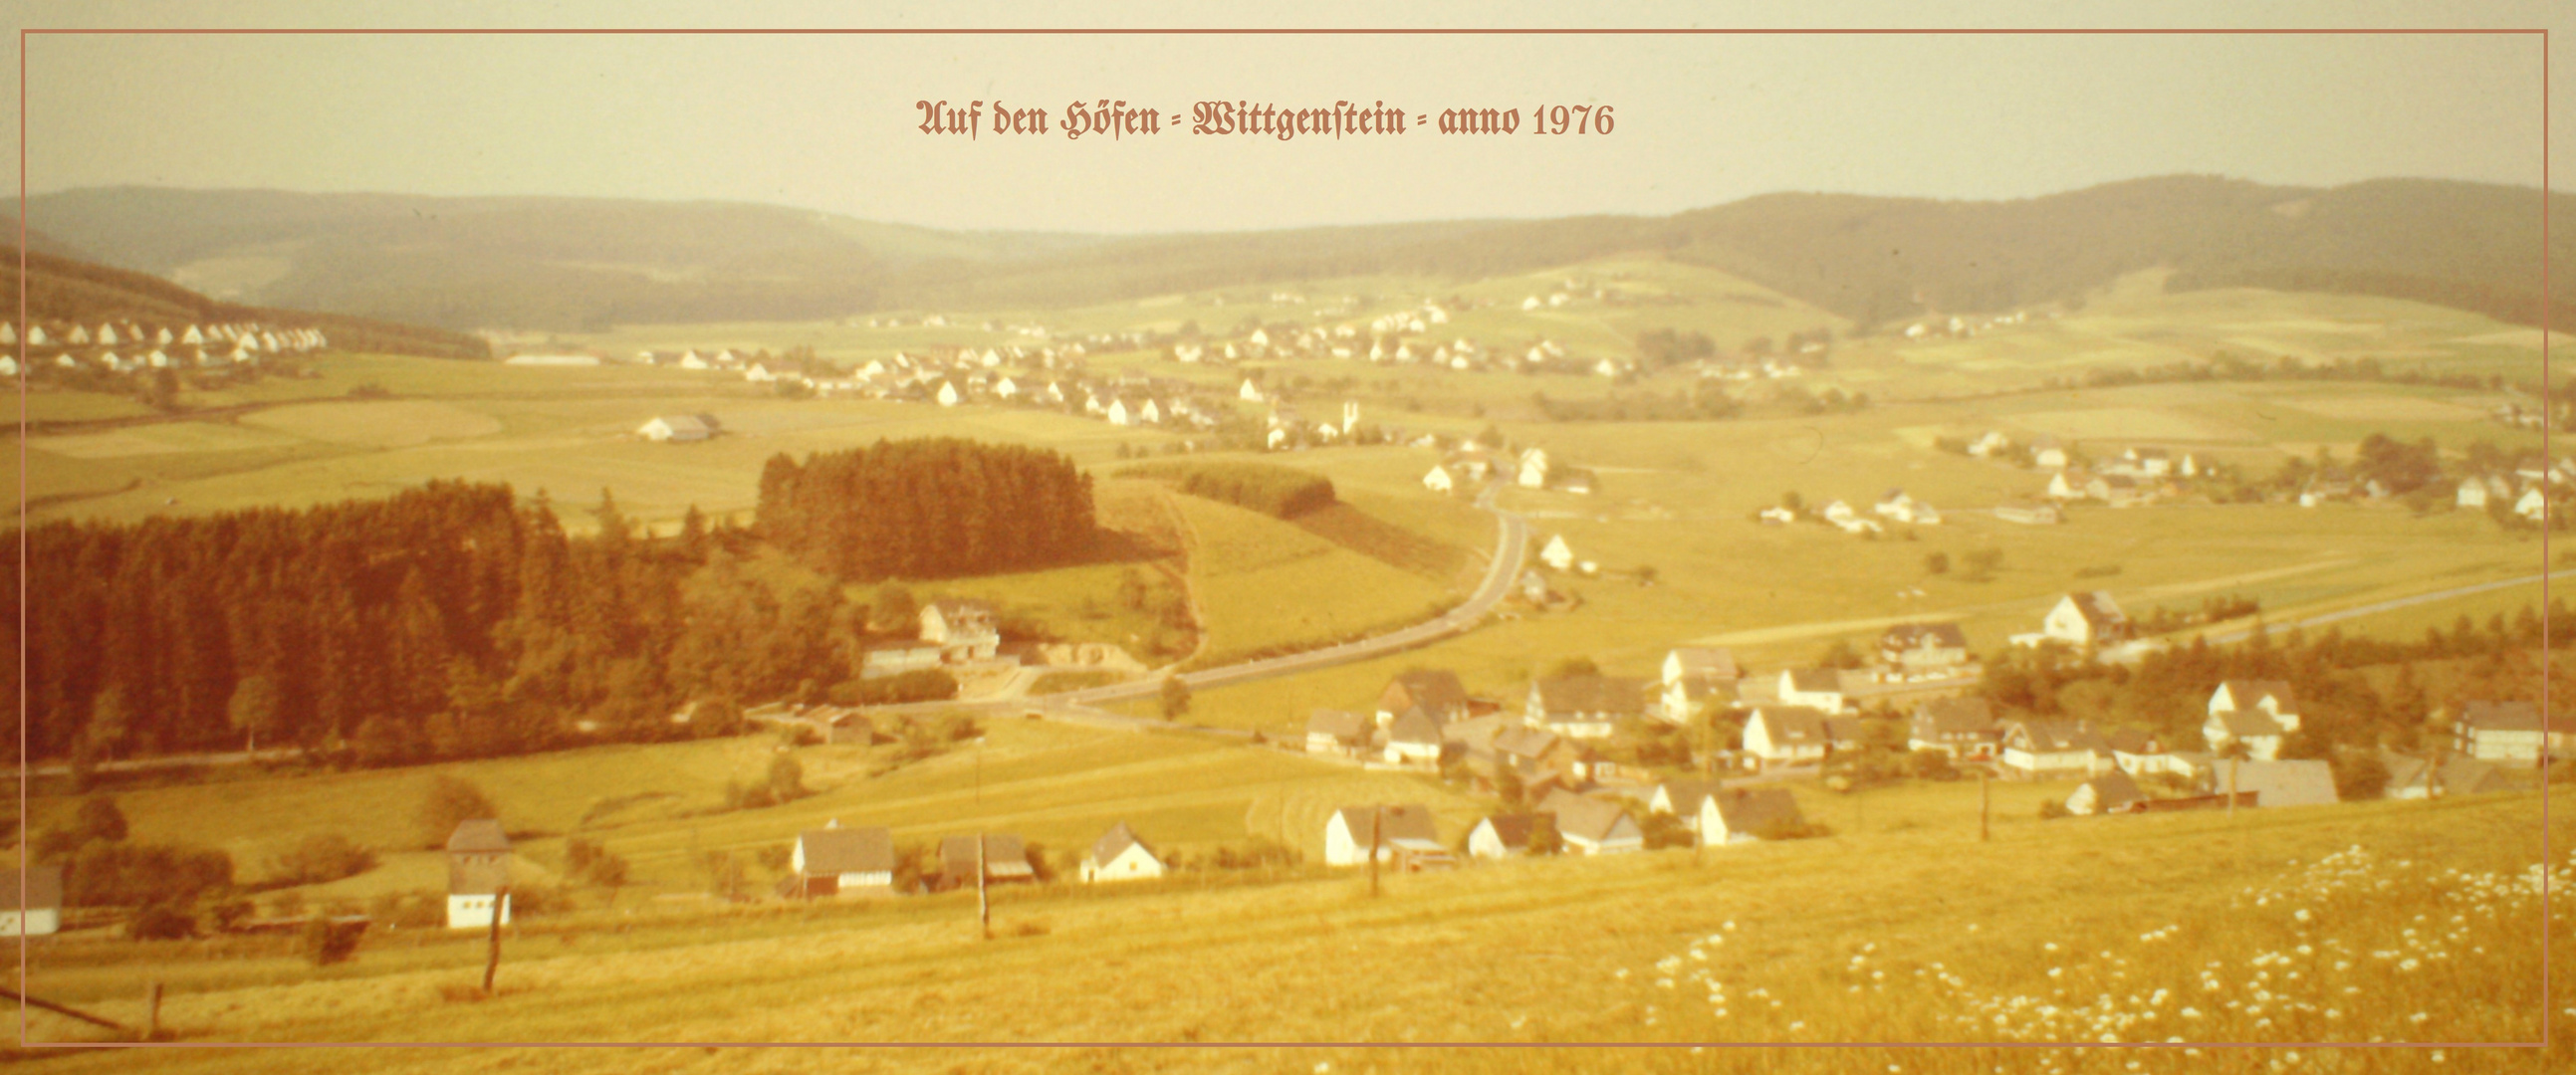 Auf den Höfen - Wittgenstein - anno 1976